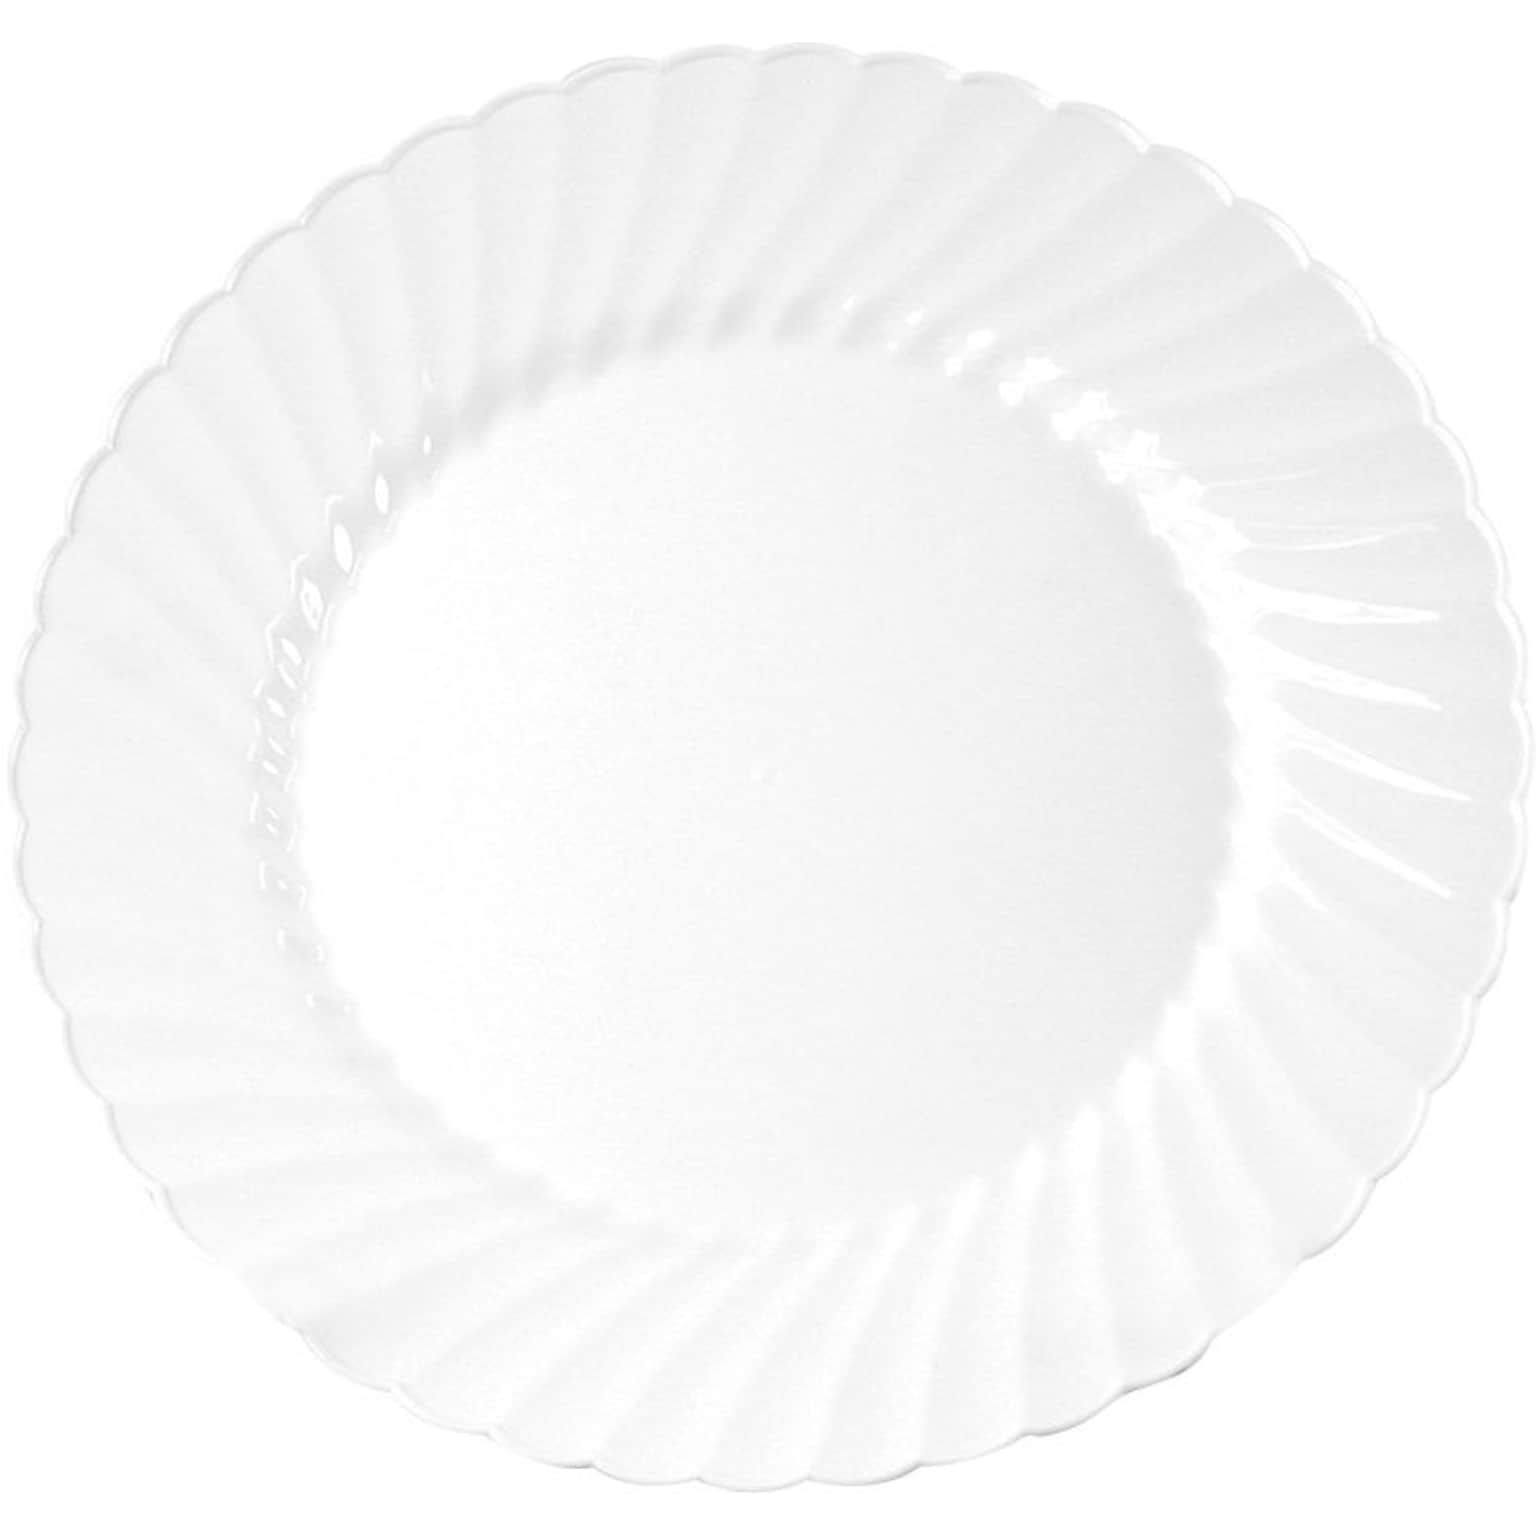 WNA Classicware Plastic Plates, 9, White, 180/Carton (WNACW9180W)